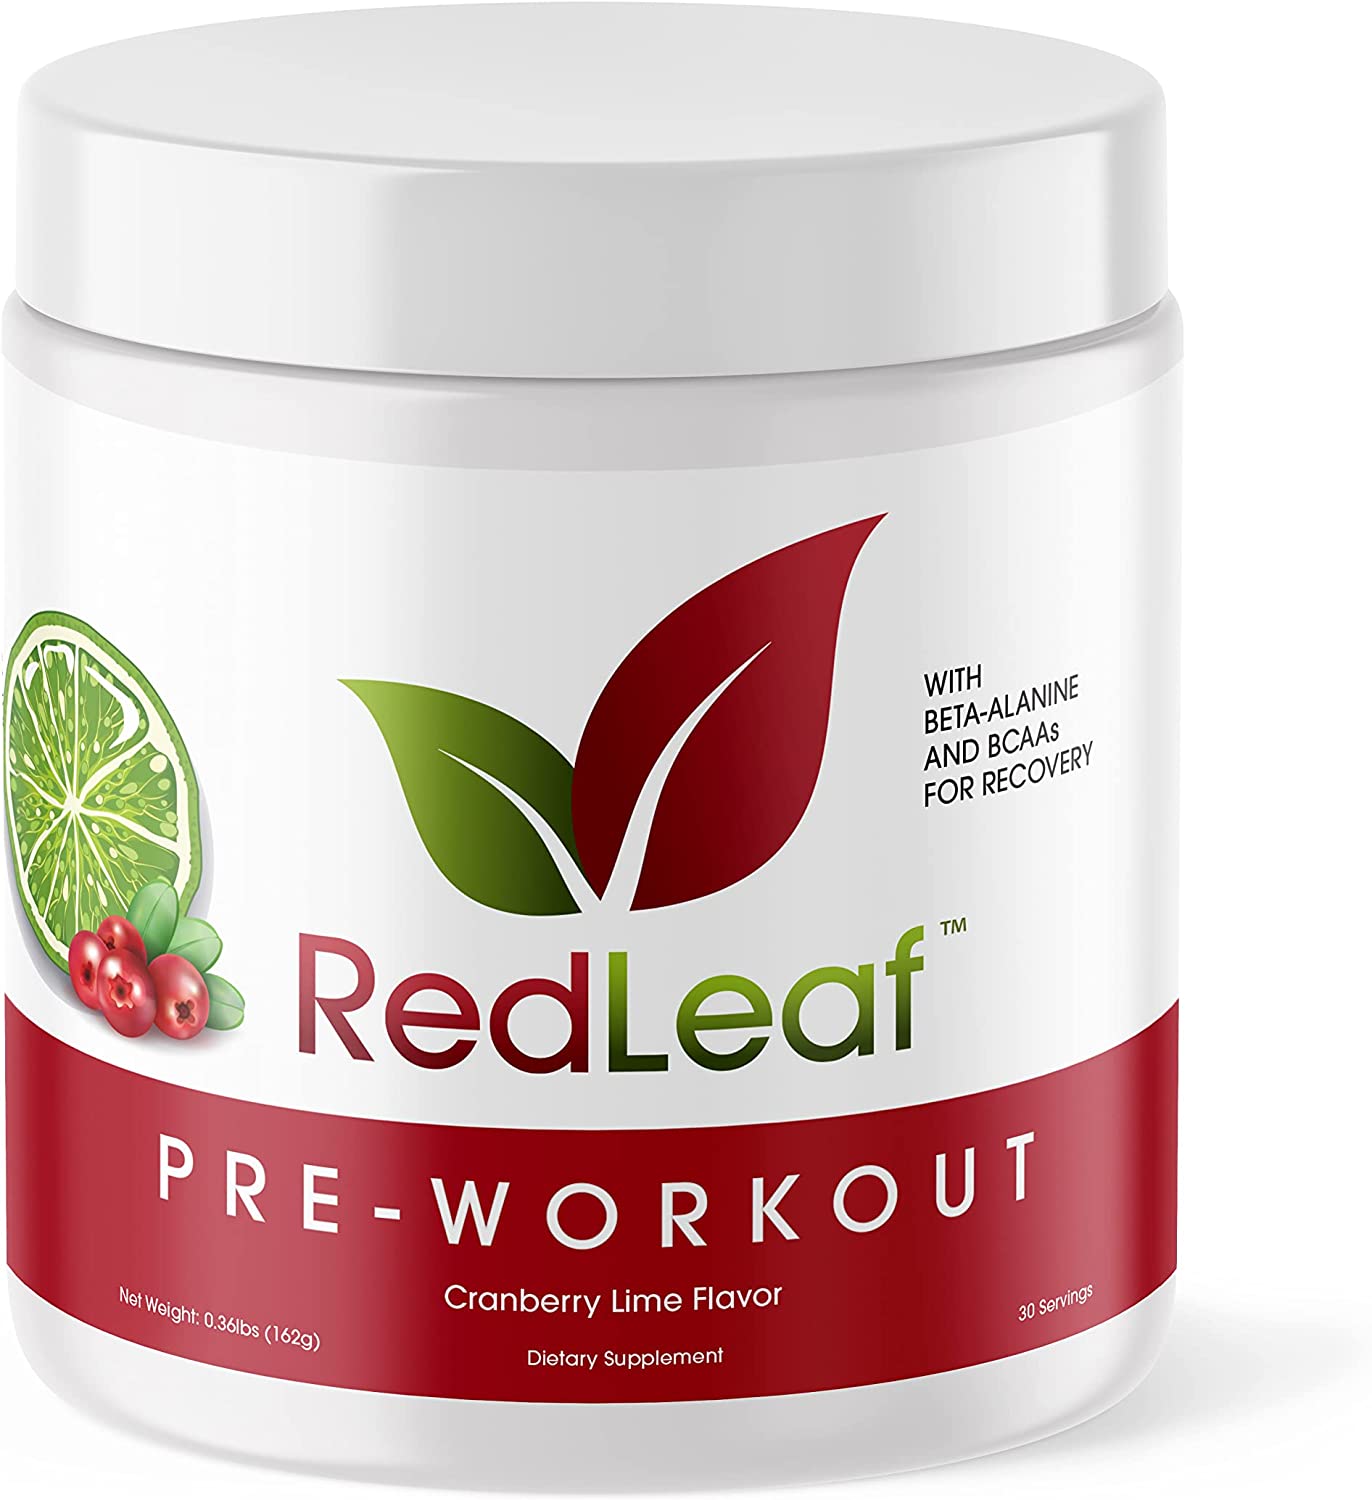 redleaf pre workout